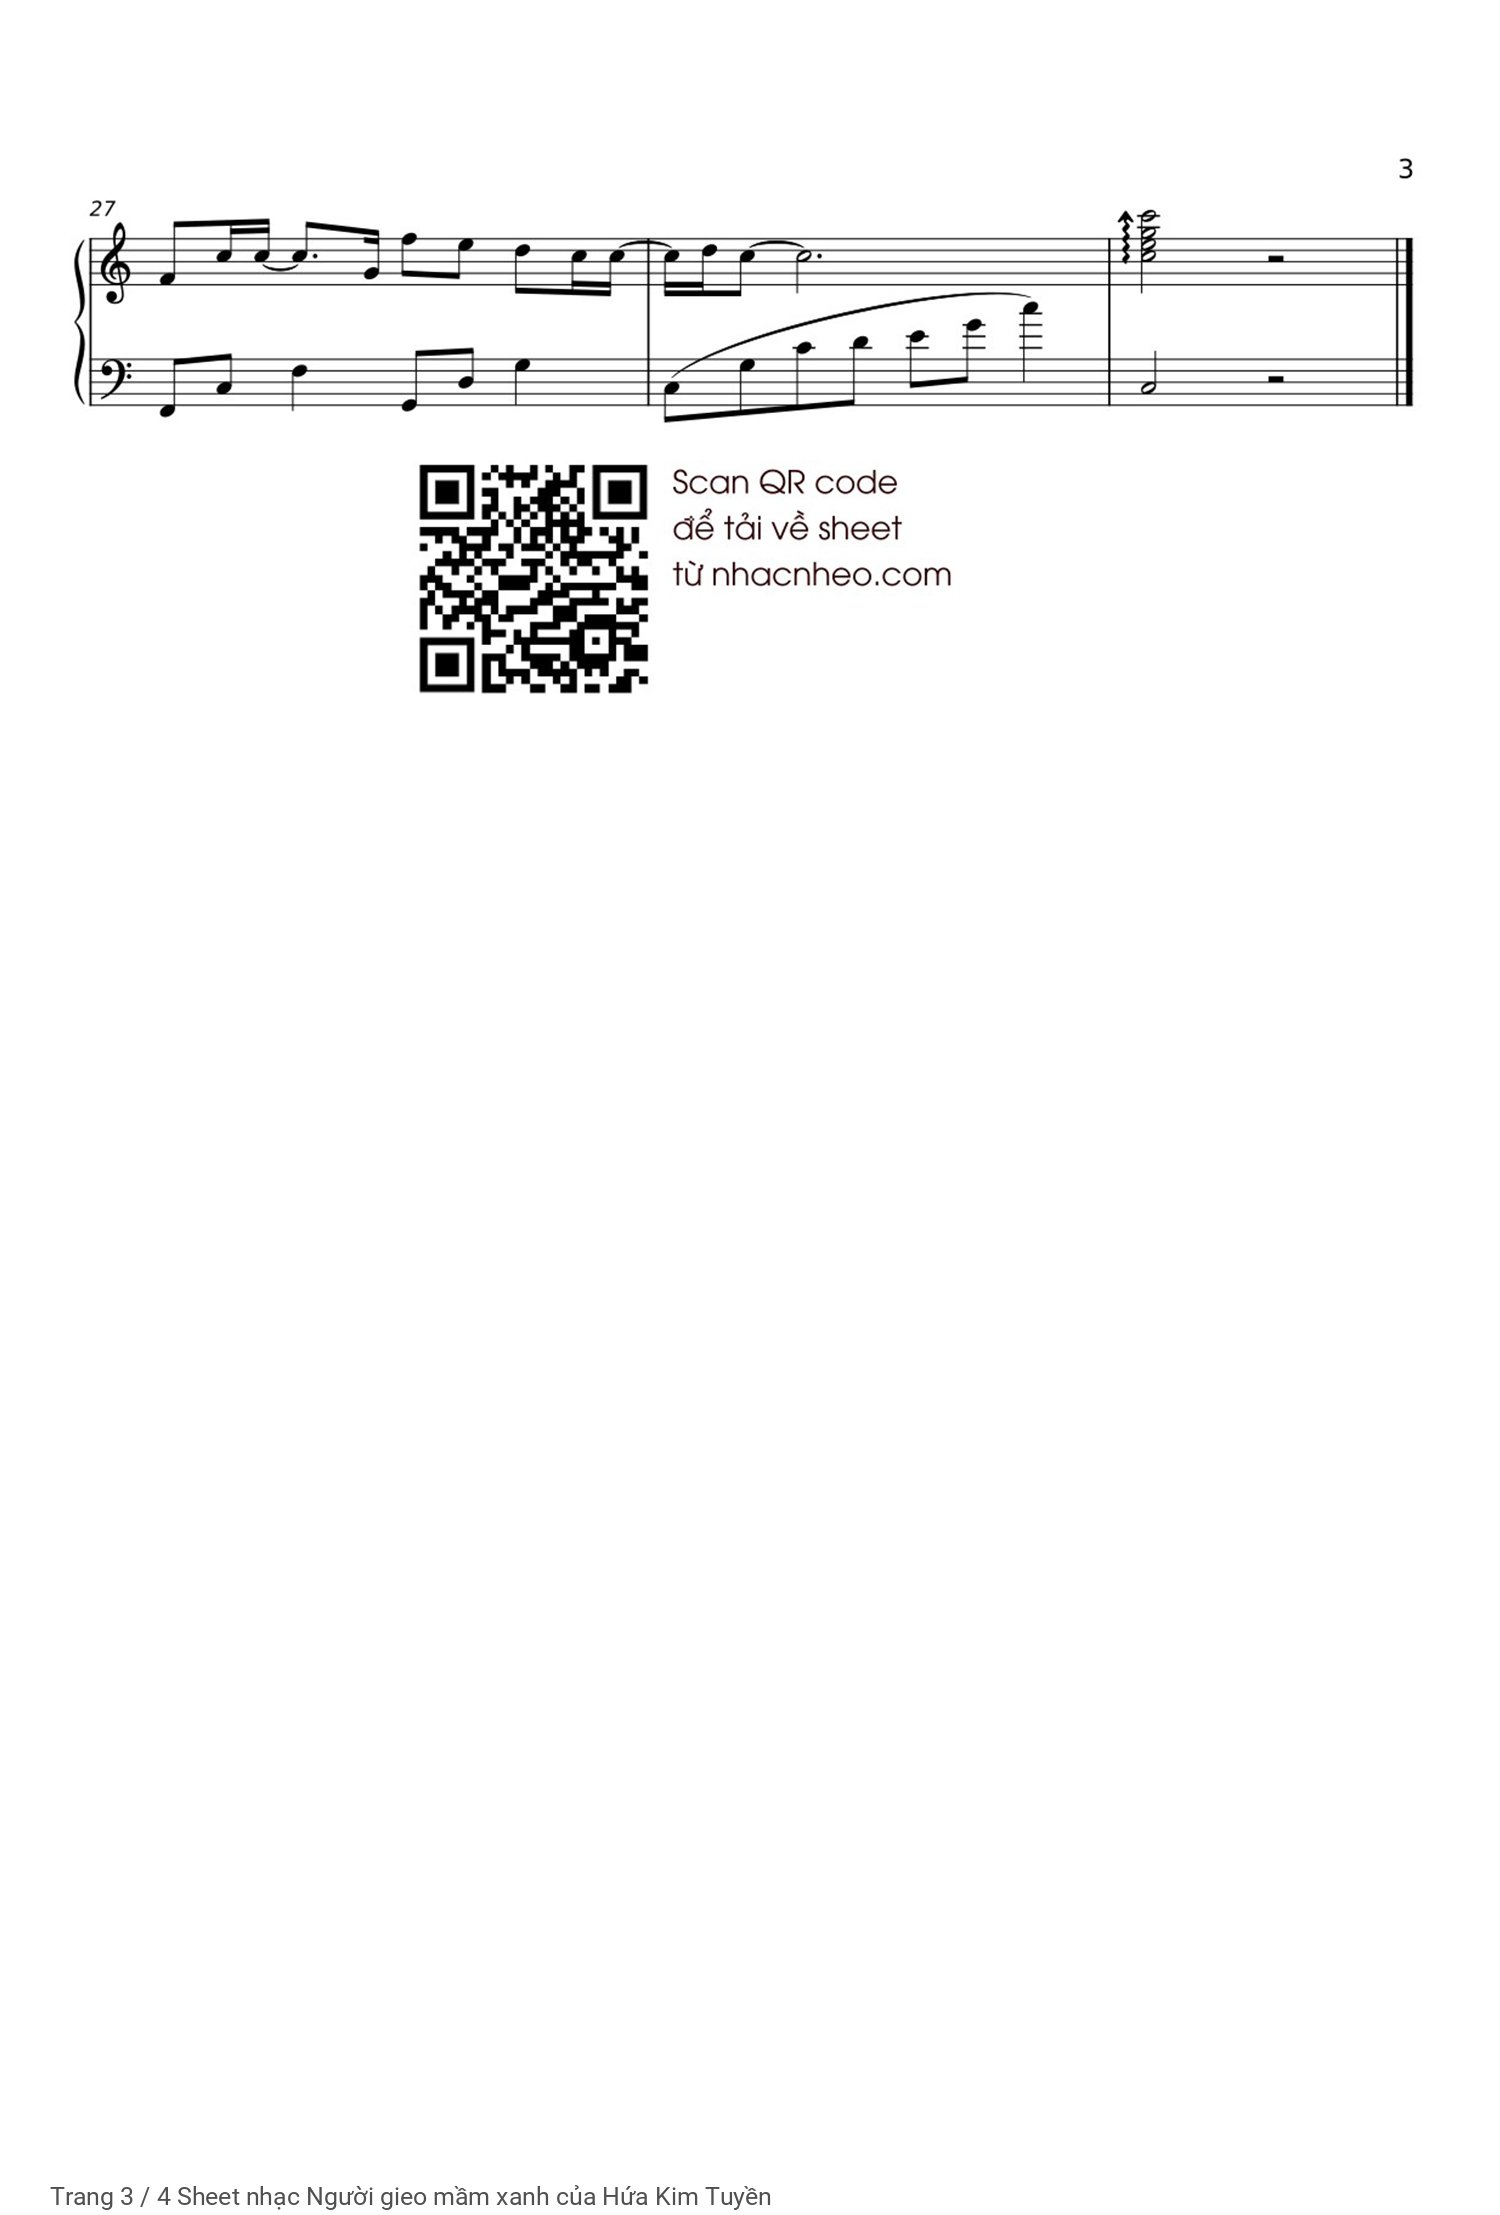 Trang 3 của Sheet nhạc PDF Piano bài hát Người gieo mầm xanh - Hứa Kim Tuyền